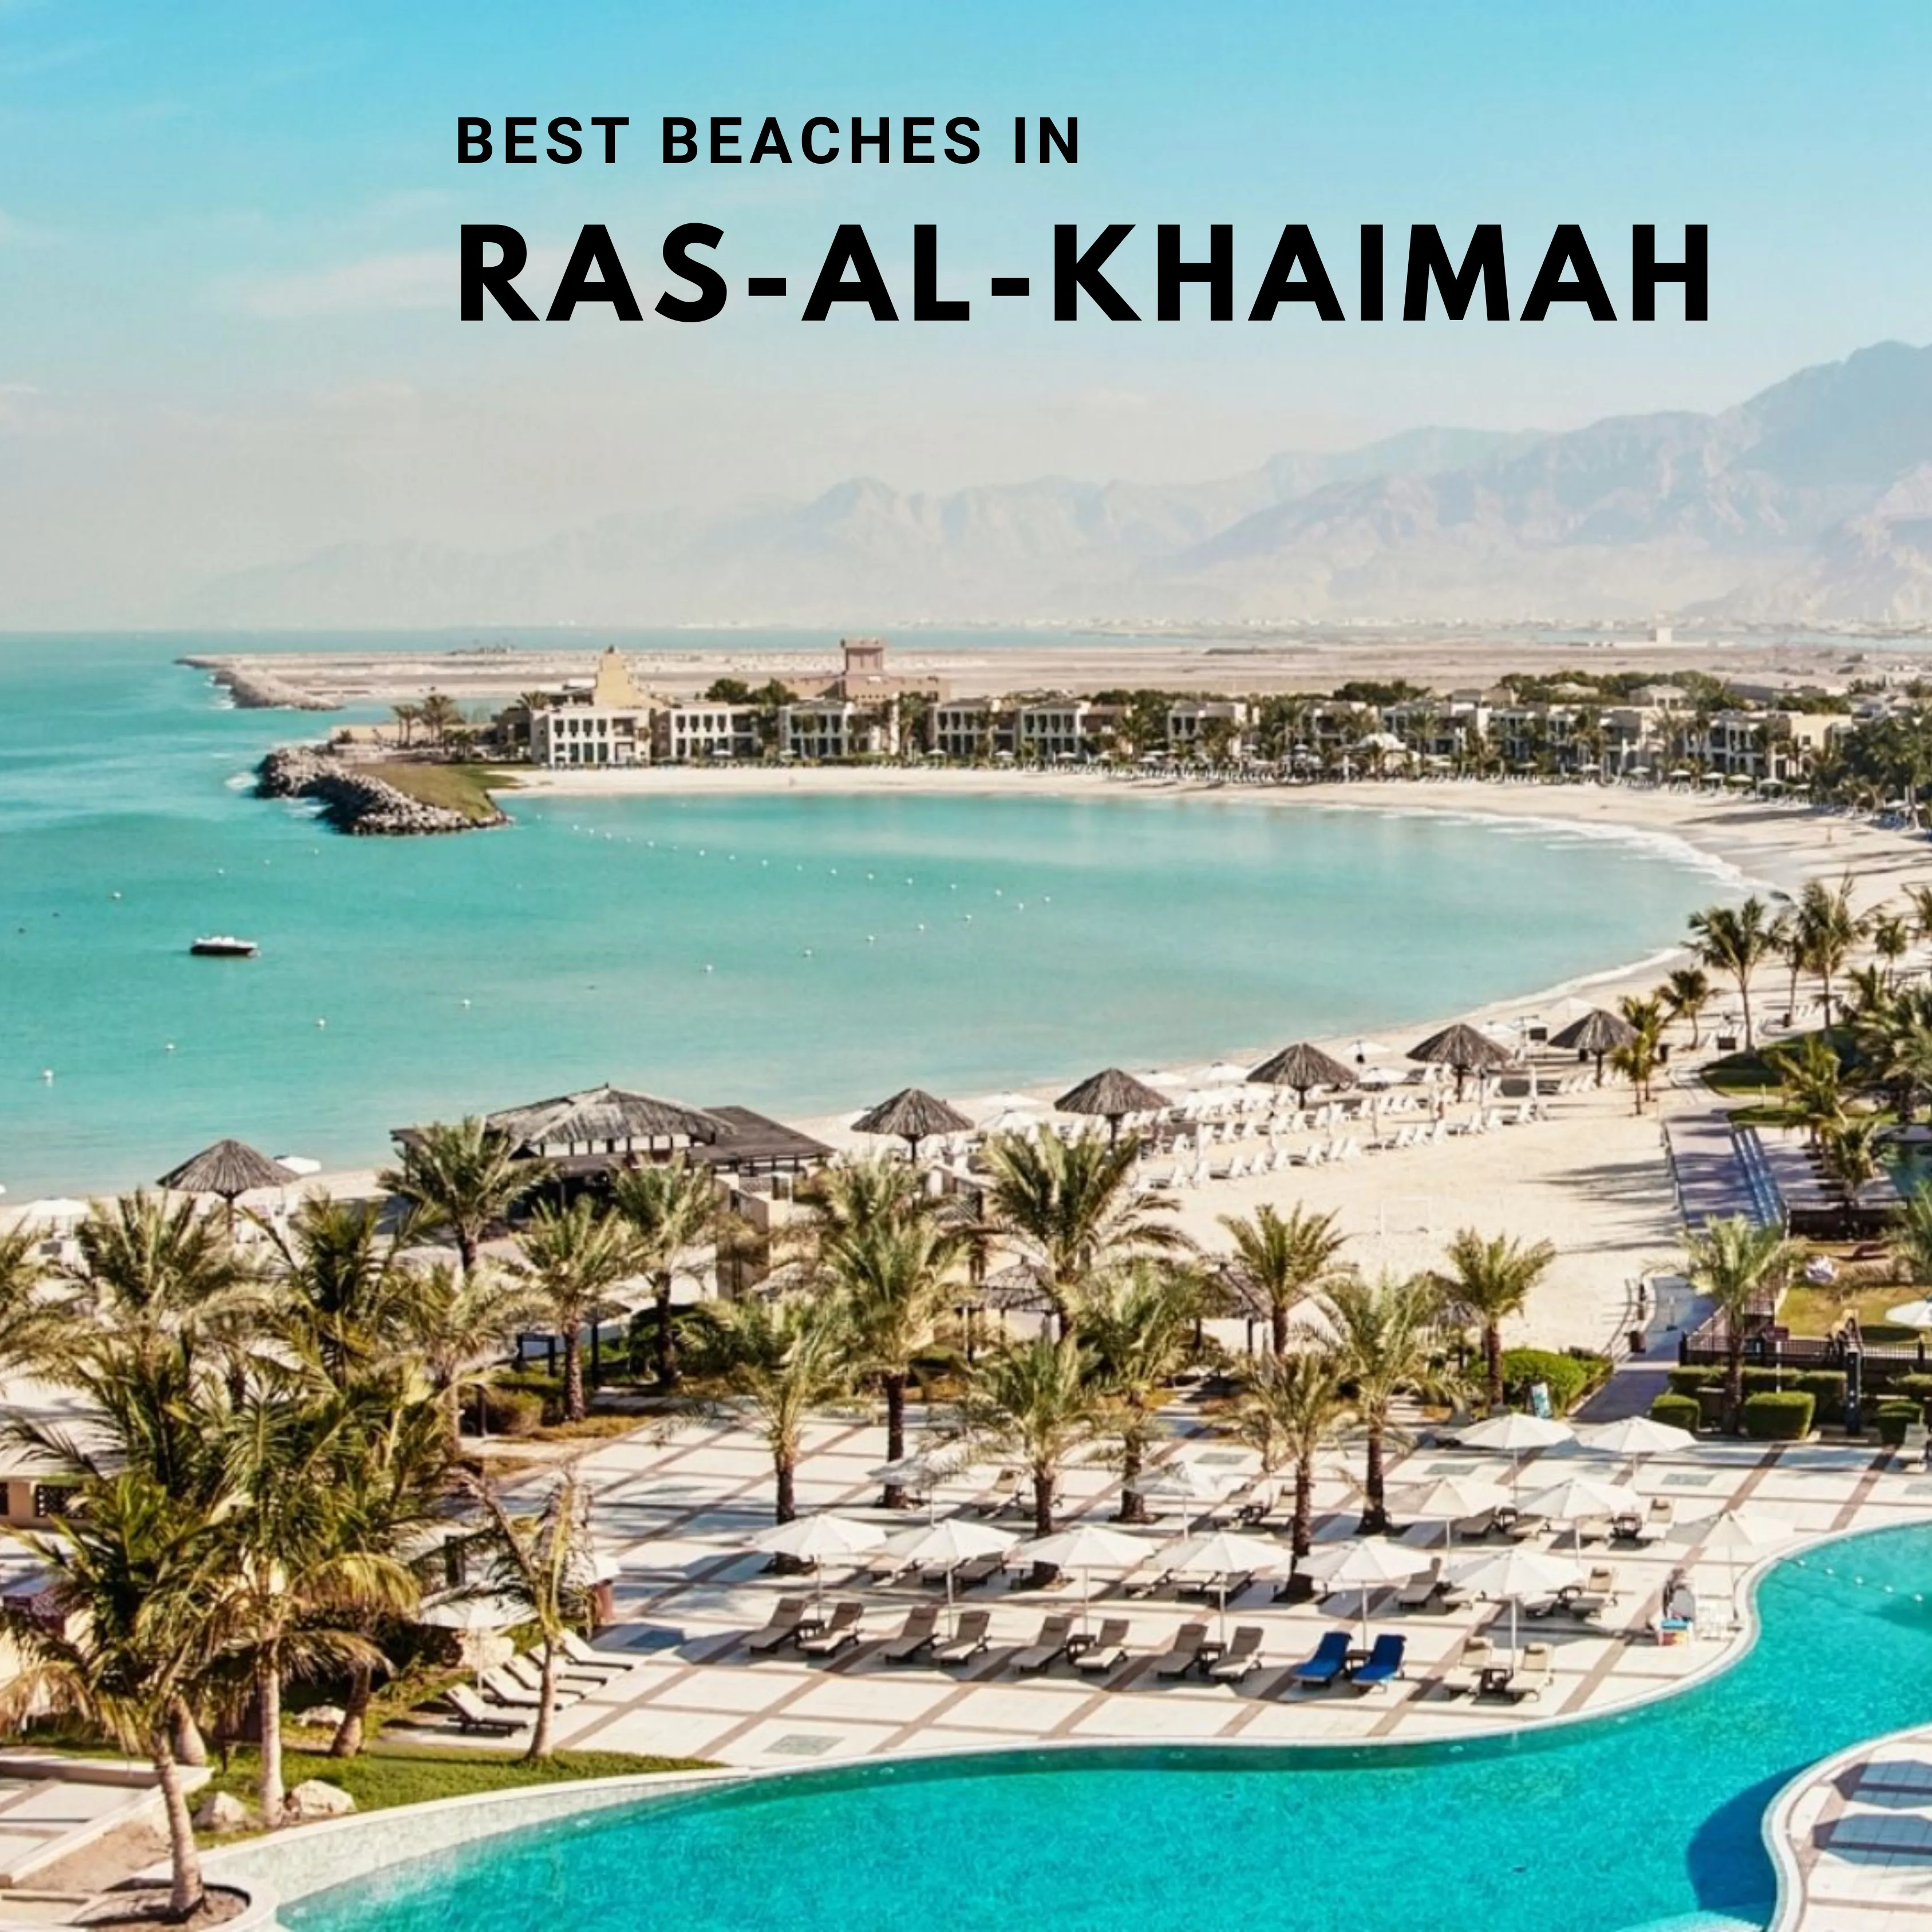 LIST OF TOP BEACHES IN RAS AL KHAIMAH